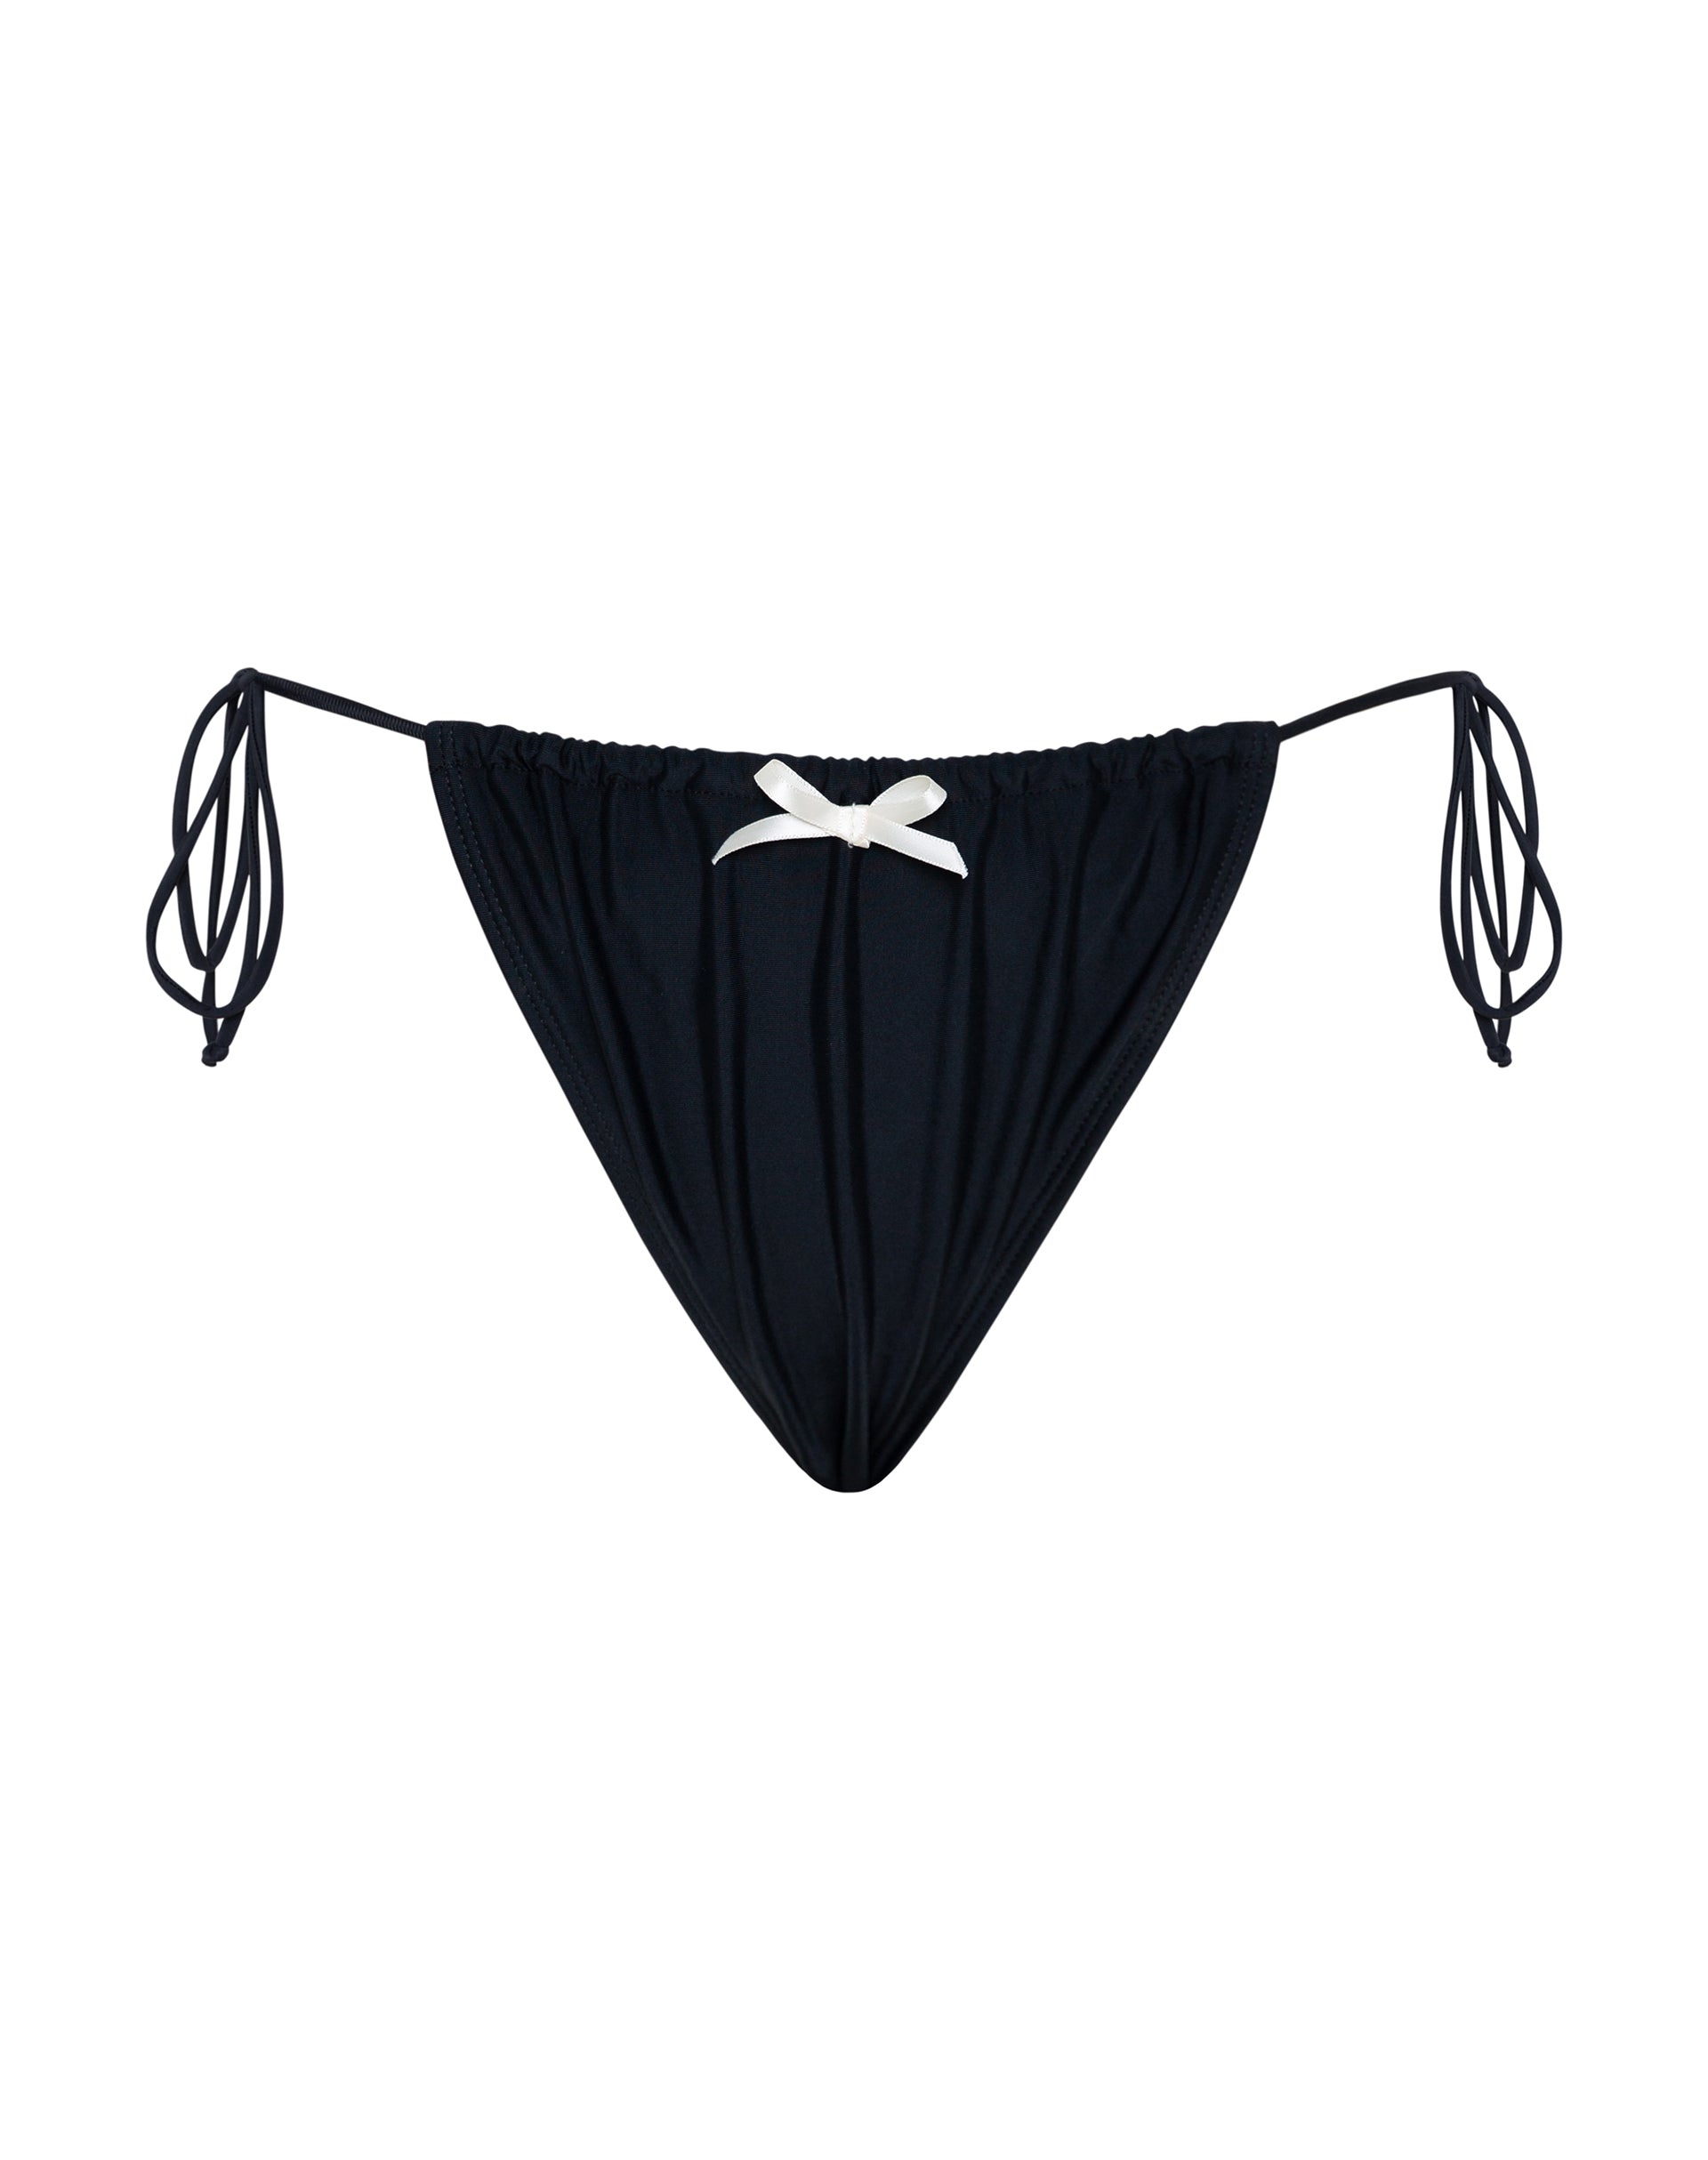 Imagen de la braguita de bikini Leyna negra con lazo marfil